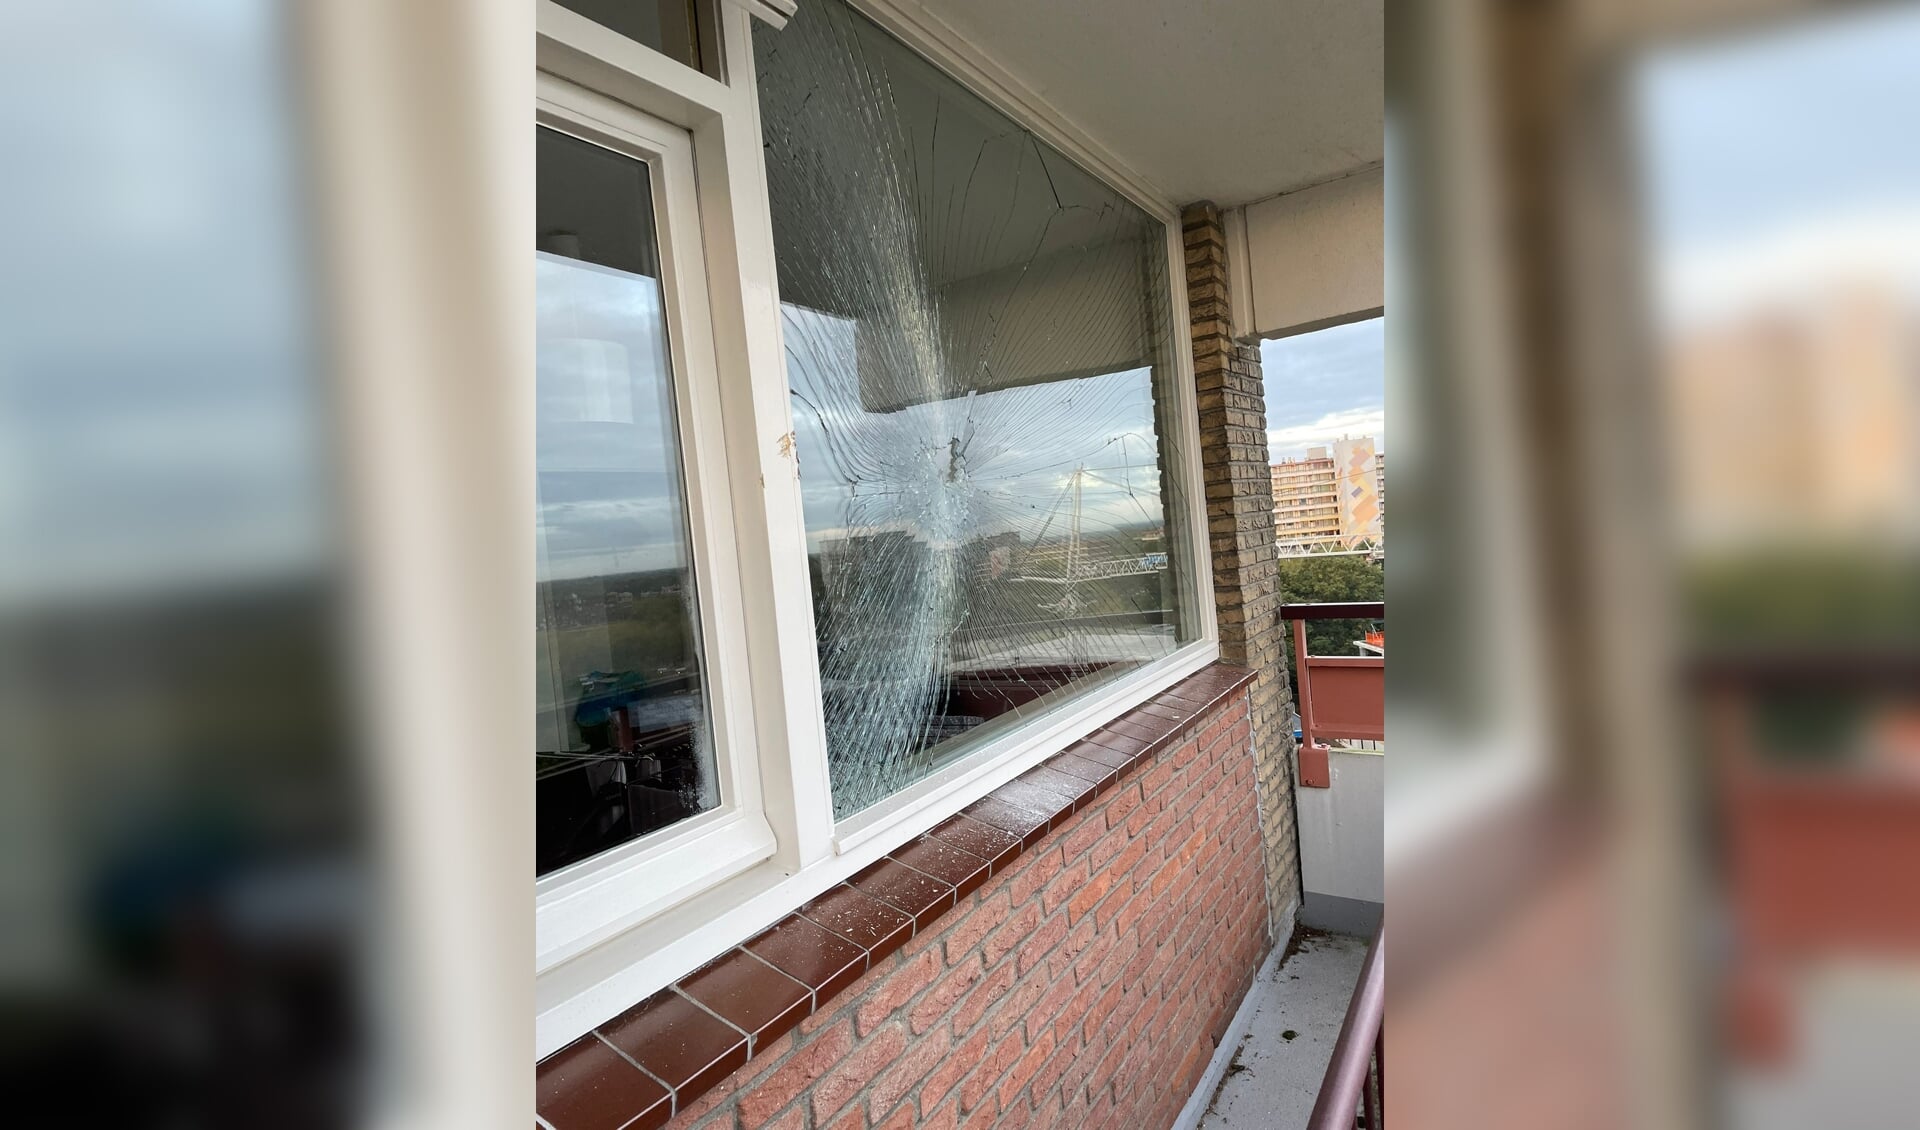 De schade aan het raam van de woning op elf hoog, veroorzaakt door een bouwkraan.